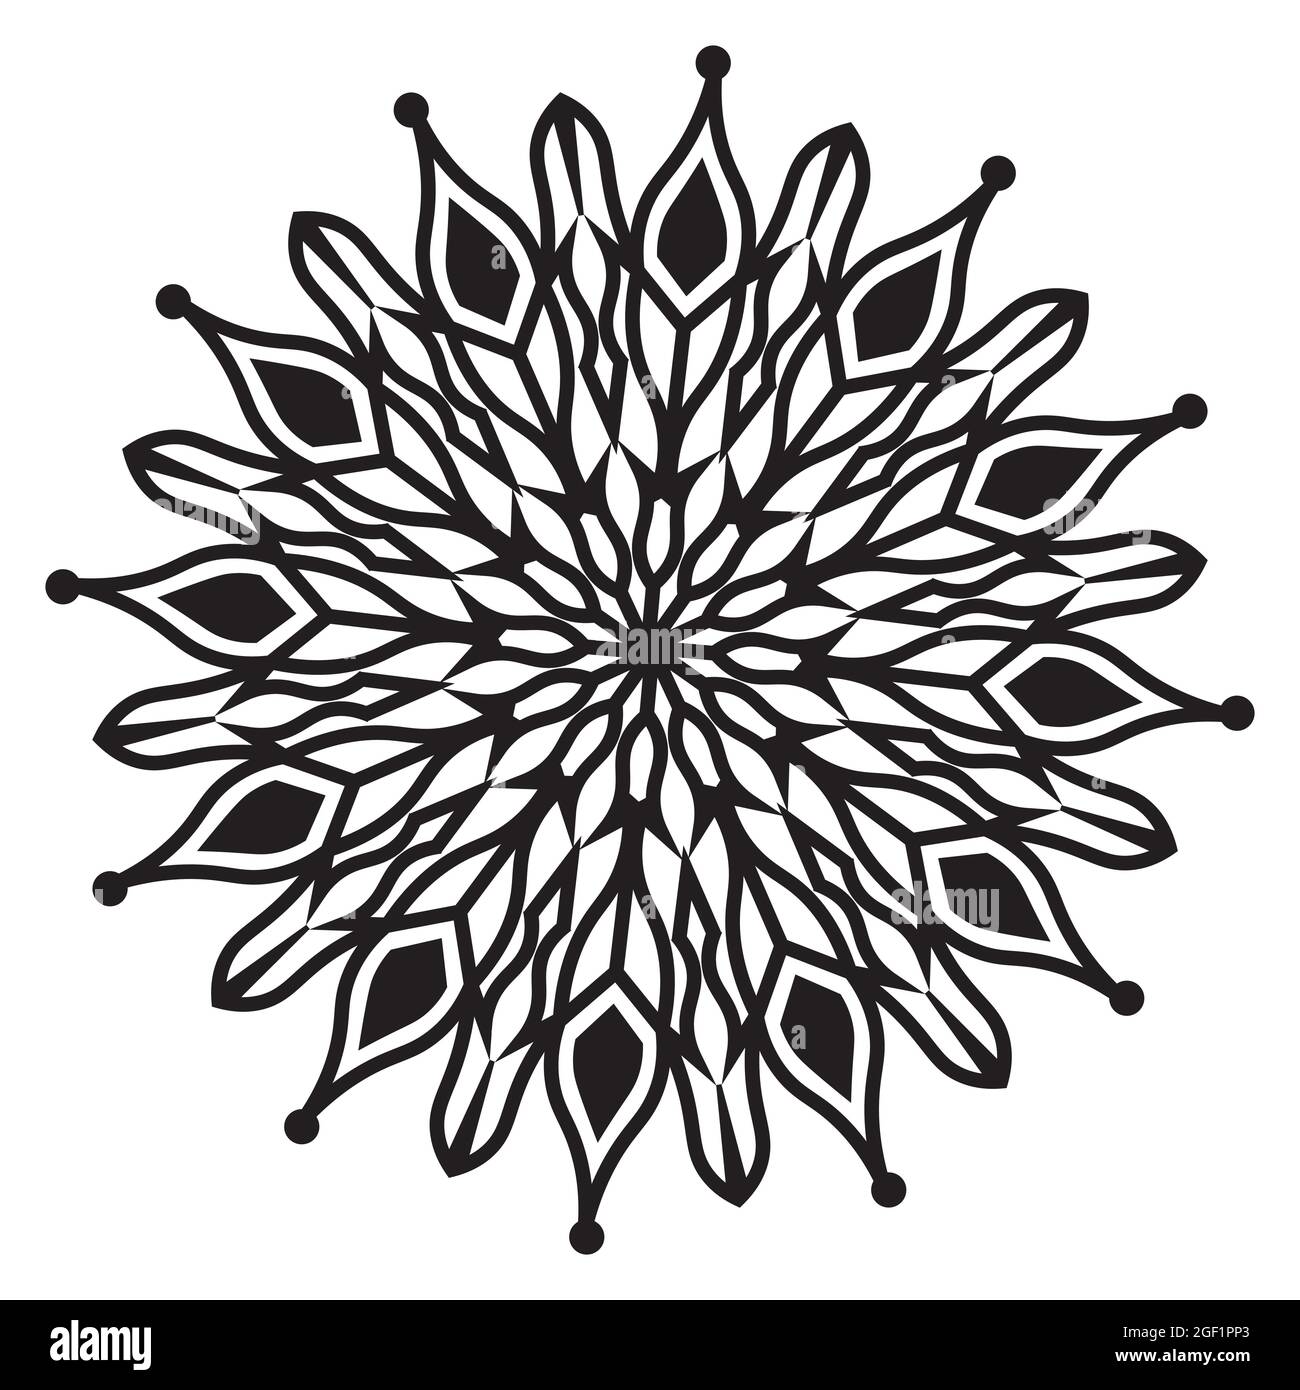 mandala isoliert Element der indischen ornamental dekorativen floralen Stil abstrakt schwarz und weiß Muster Hintergrund-Design Stock Vektor